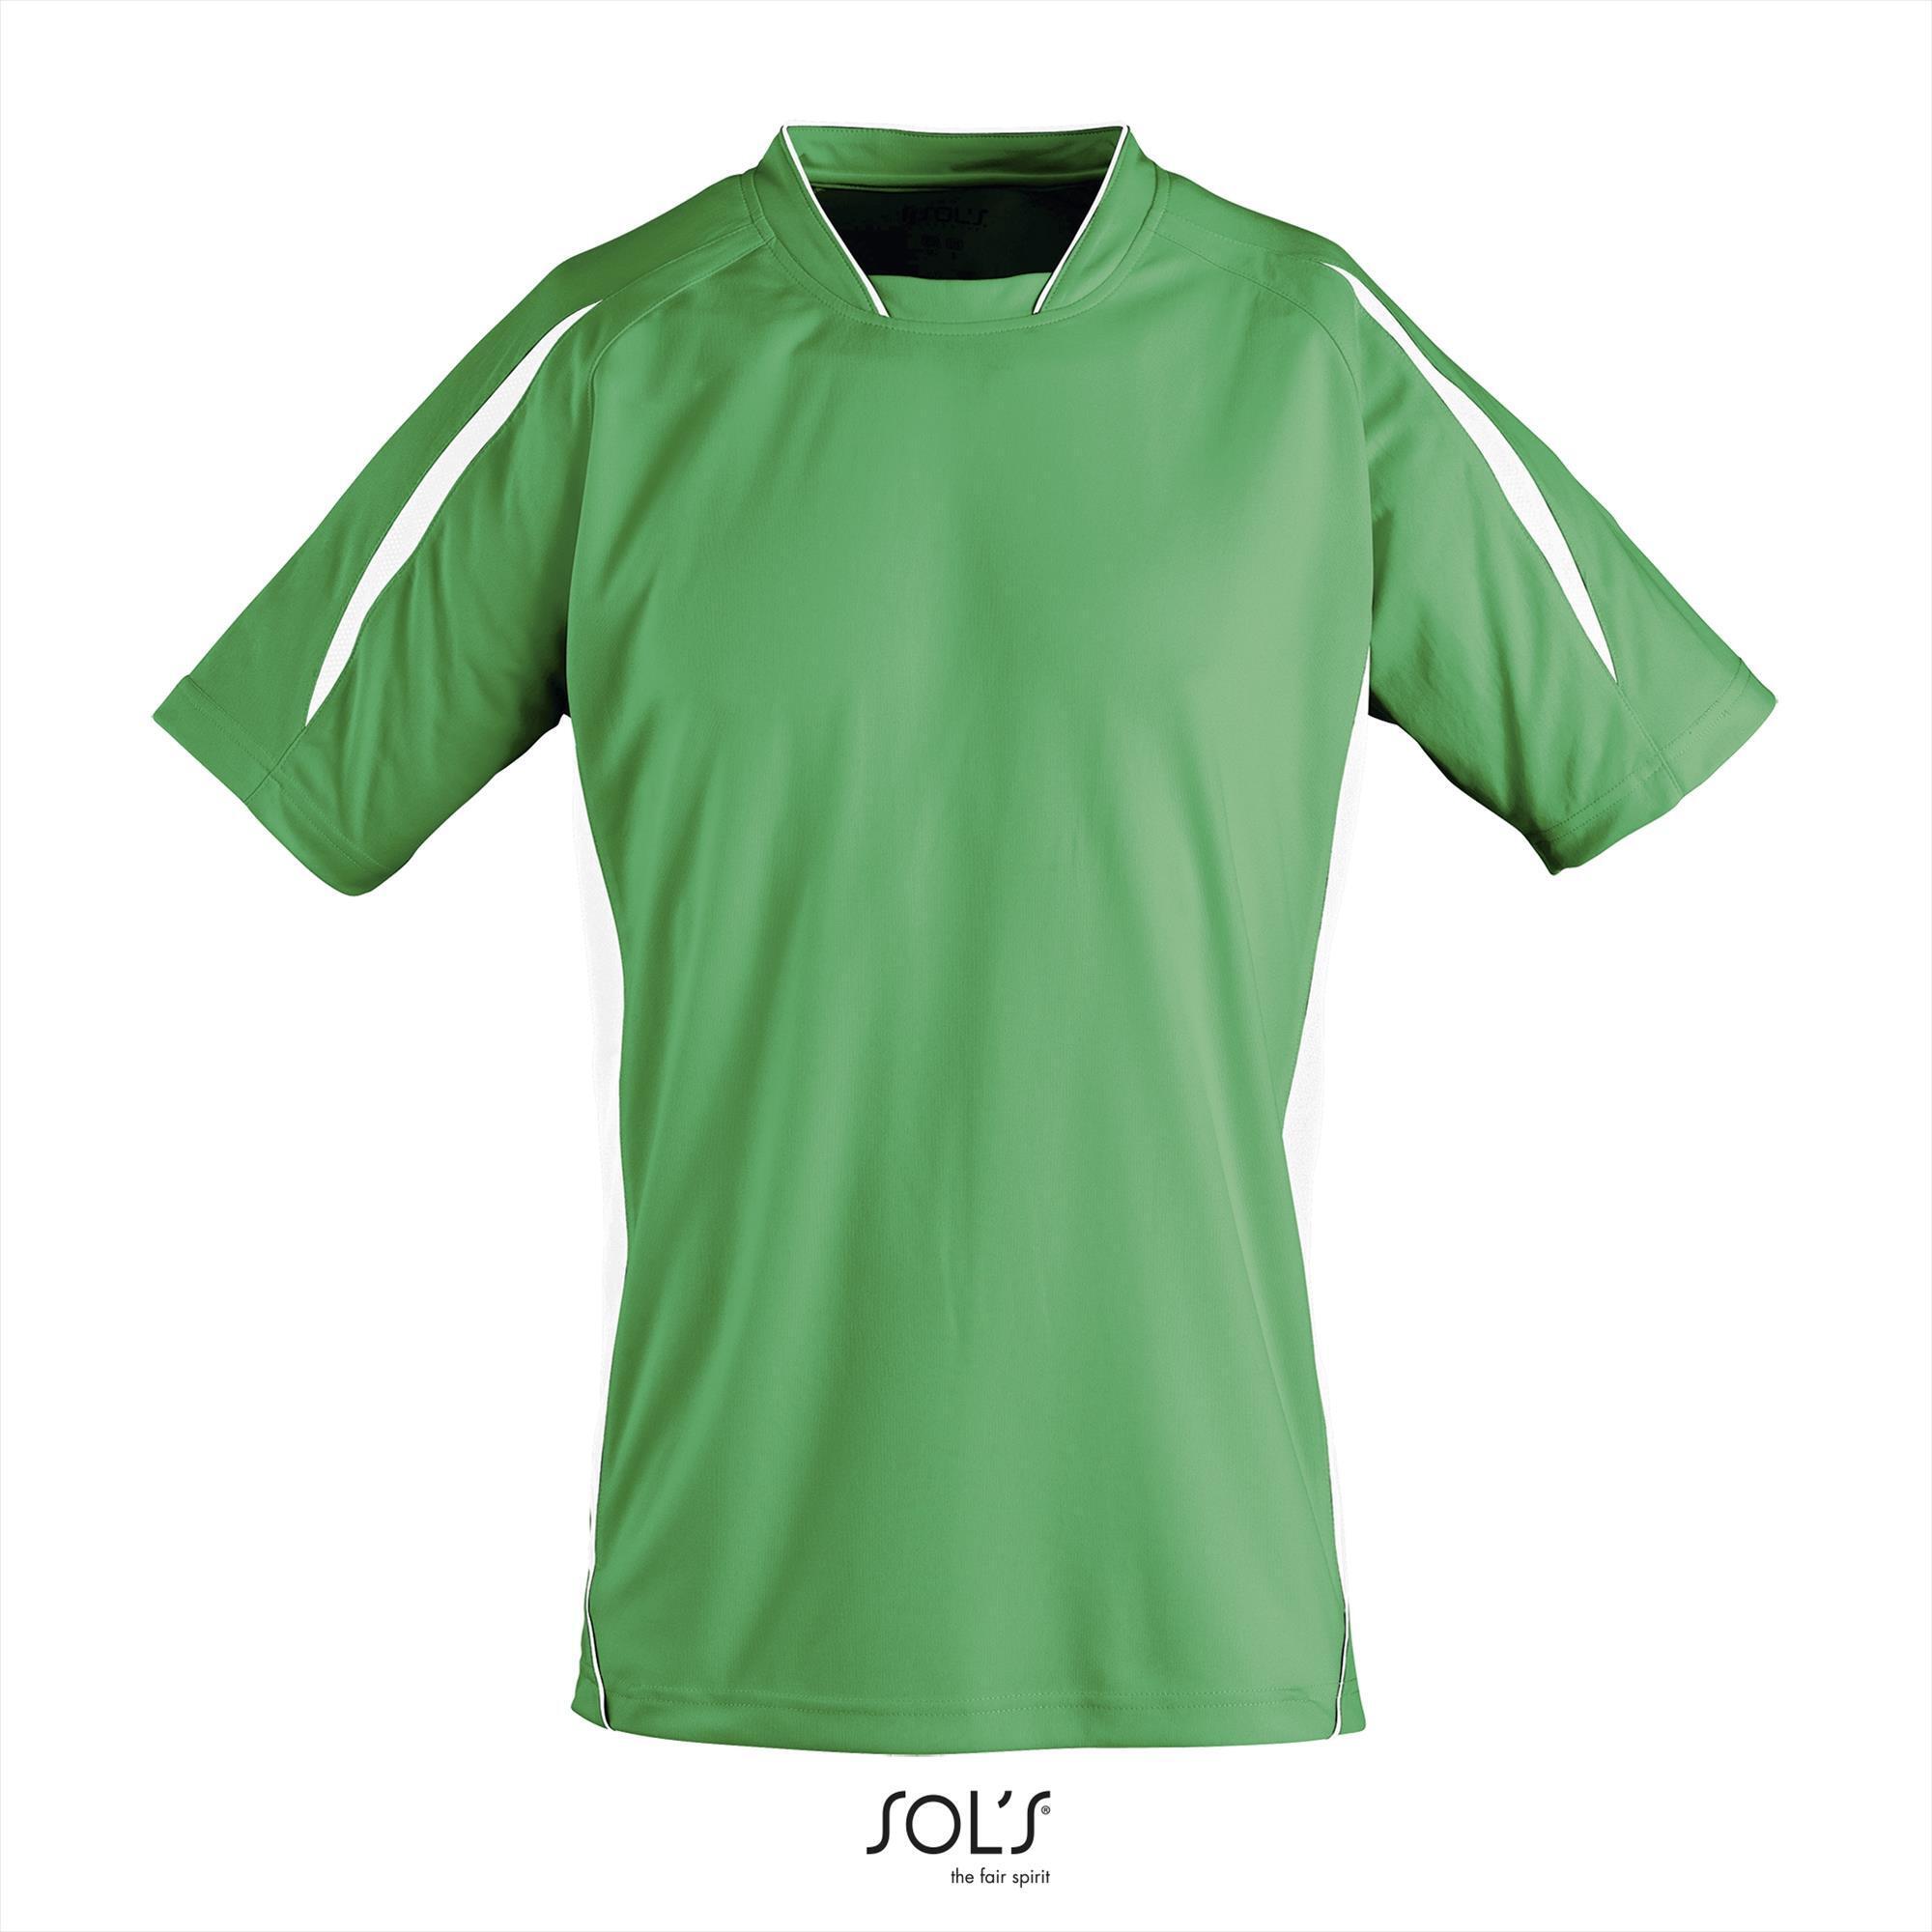 Kinder sportshirt helder groen met wit sportief sport shirt personaliseren sport shirt